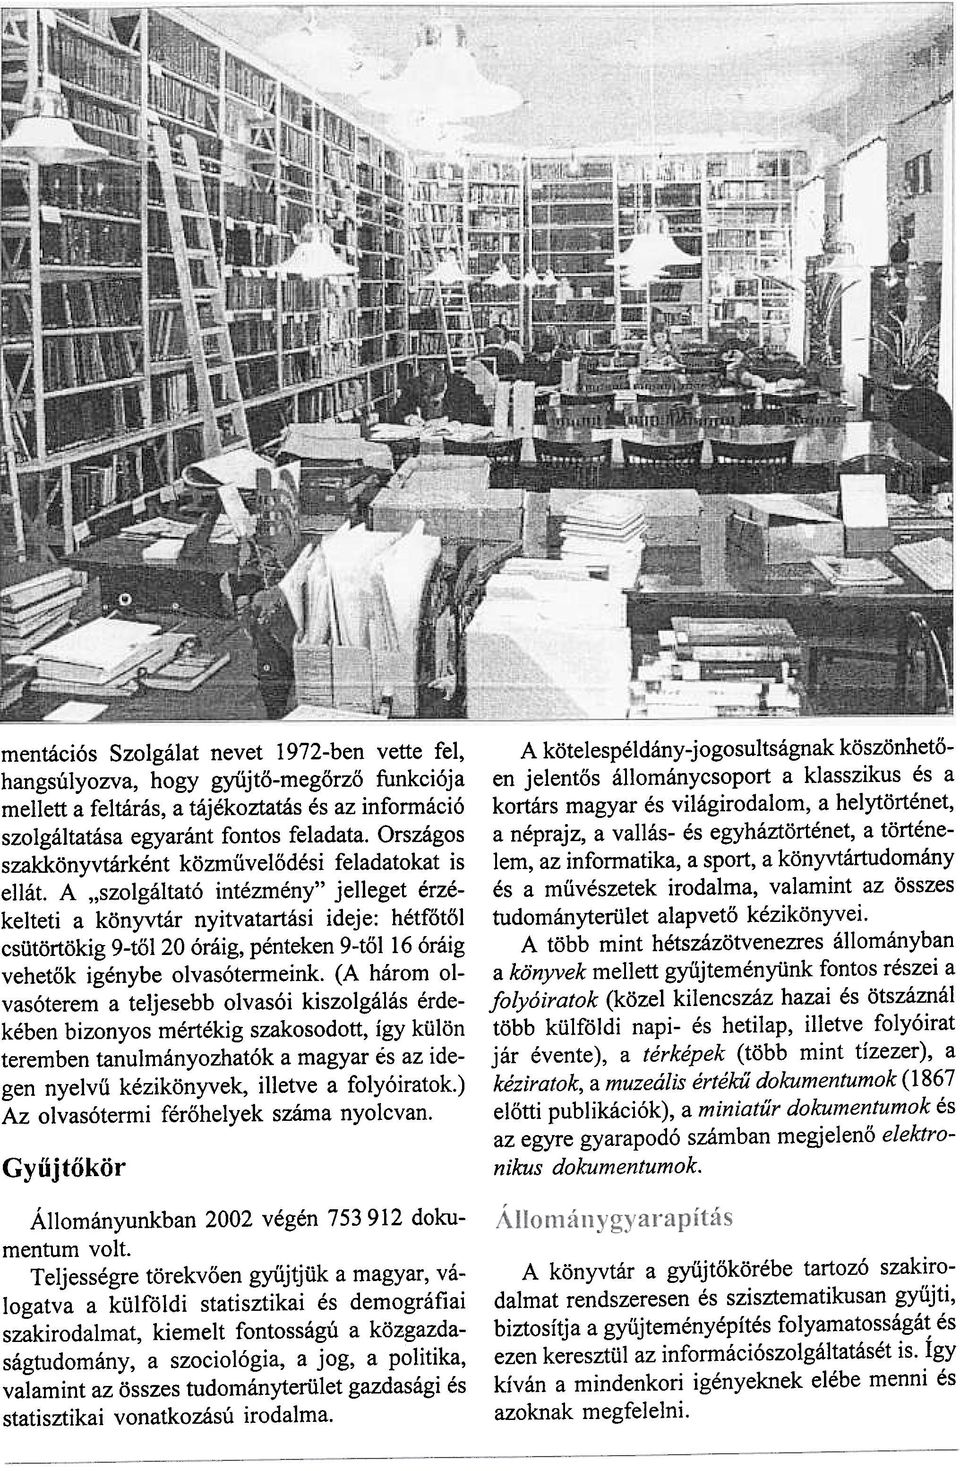 A "szolgáltató intézmény" jelleget érzékelteti a könyvtár nyitvatartási ideje: hétfõtõl csütörtökig 9-tõl 20 óráig, pénteken 9-tõl 16 óráig vehetõk igénybe olvasótermeink.